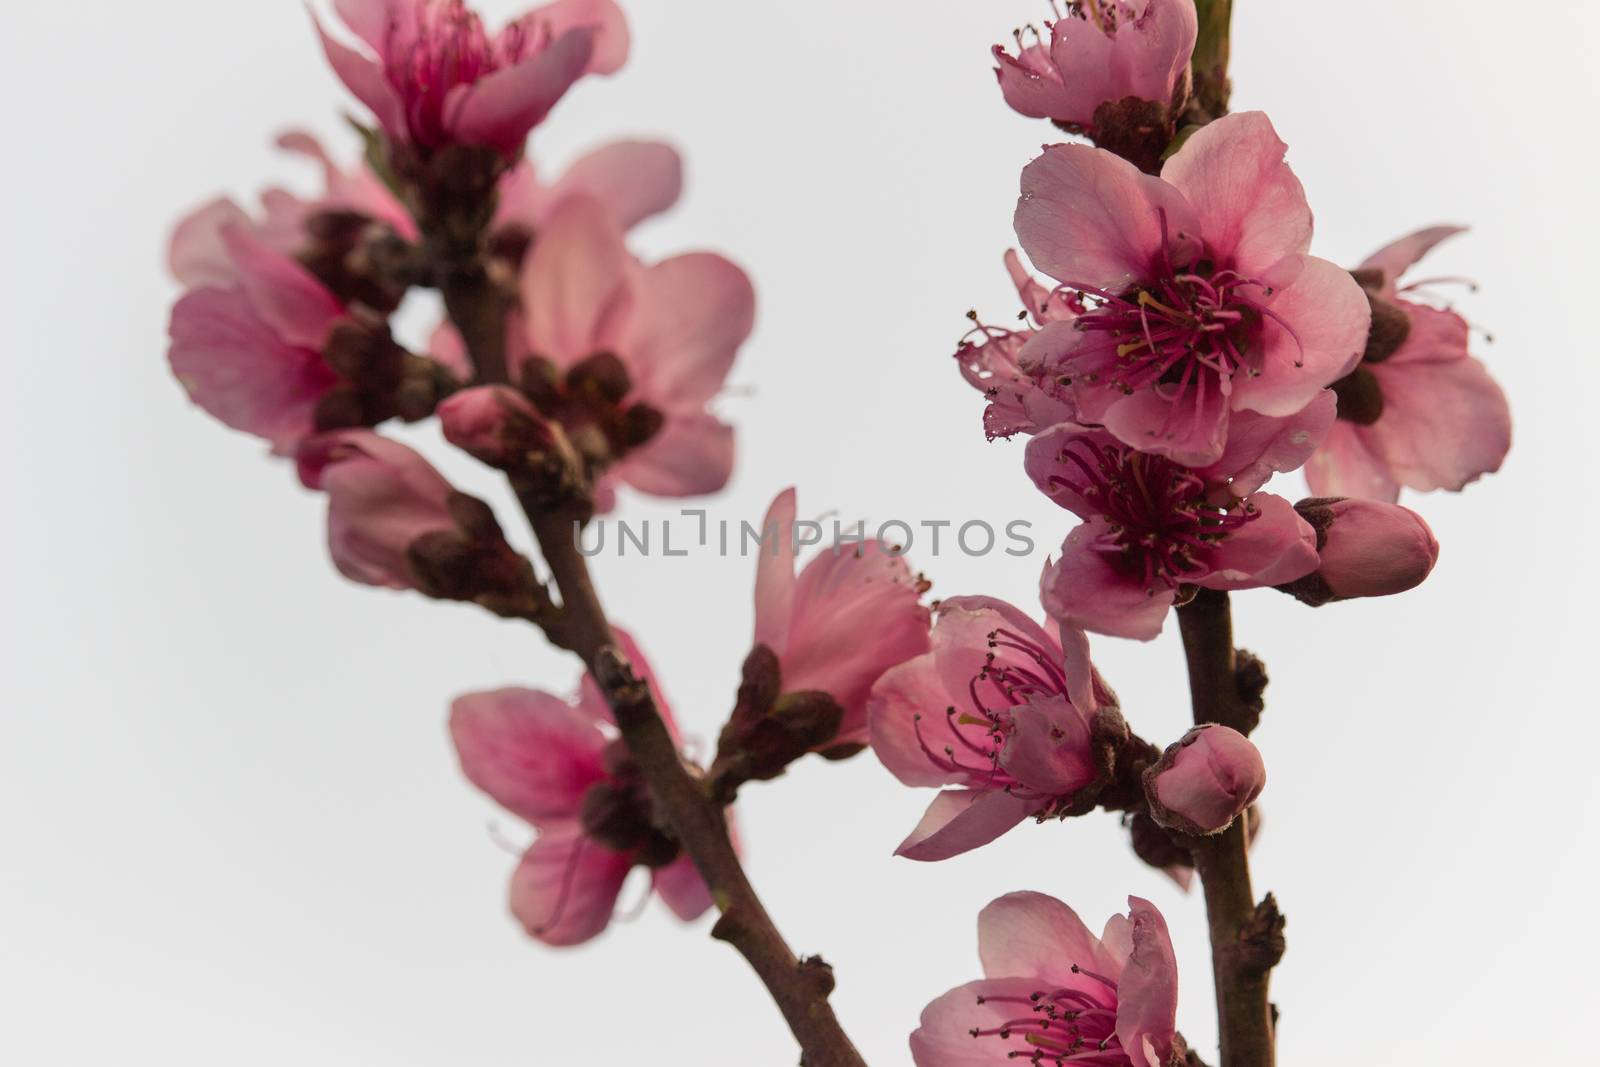 Peach flowers by alanstix64